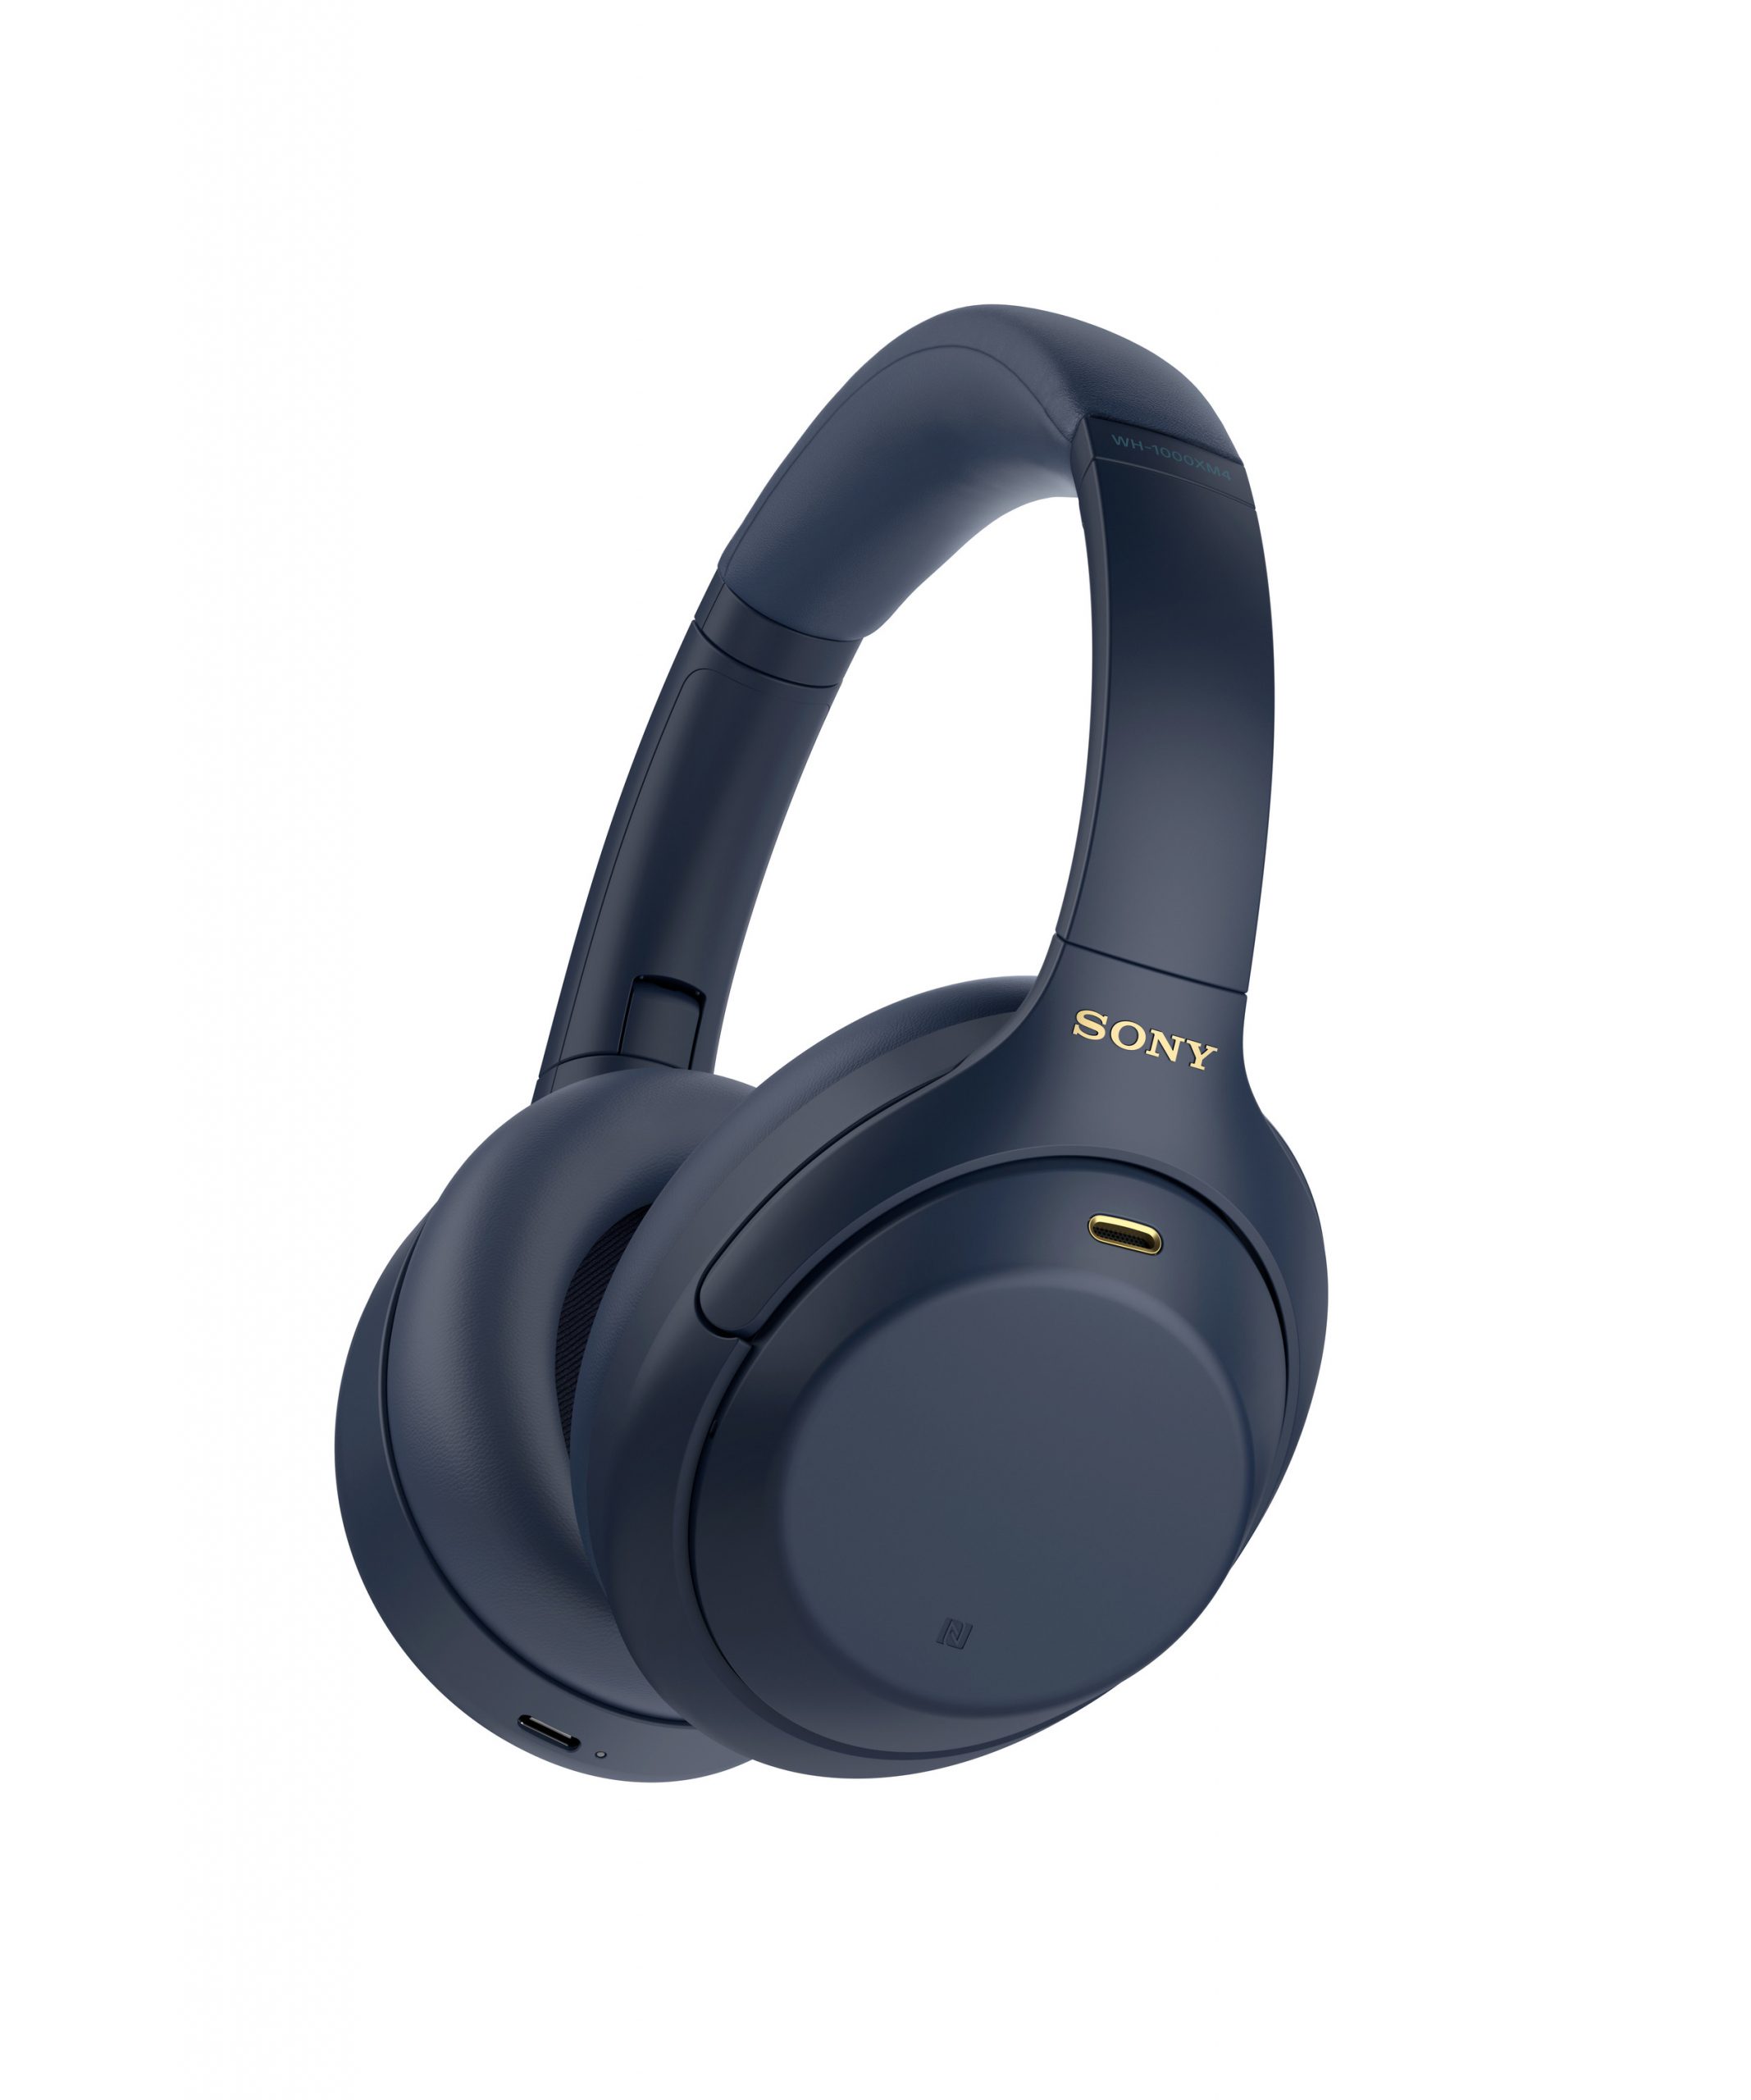 Sony giới thiệu tai nghe chống ồn WH-1000XM4 phiên bản Xanh bóng đêm hoàn toàn mới